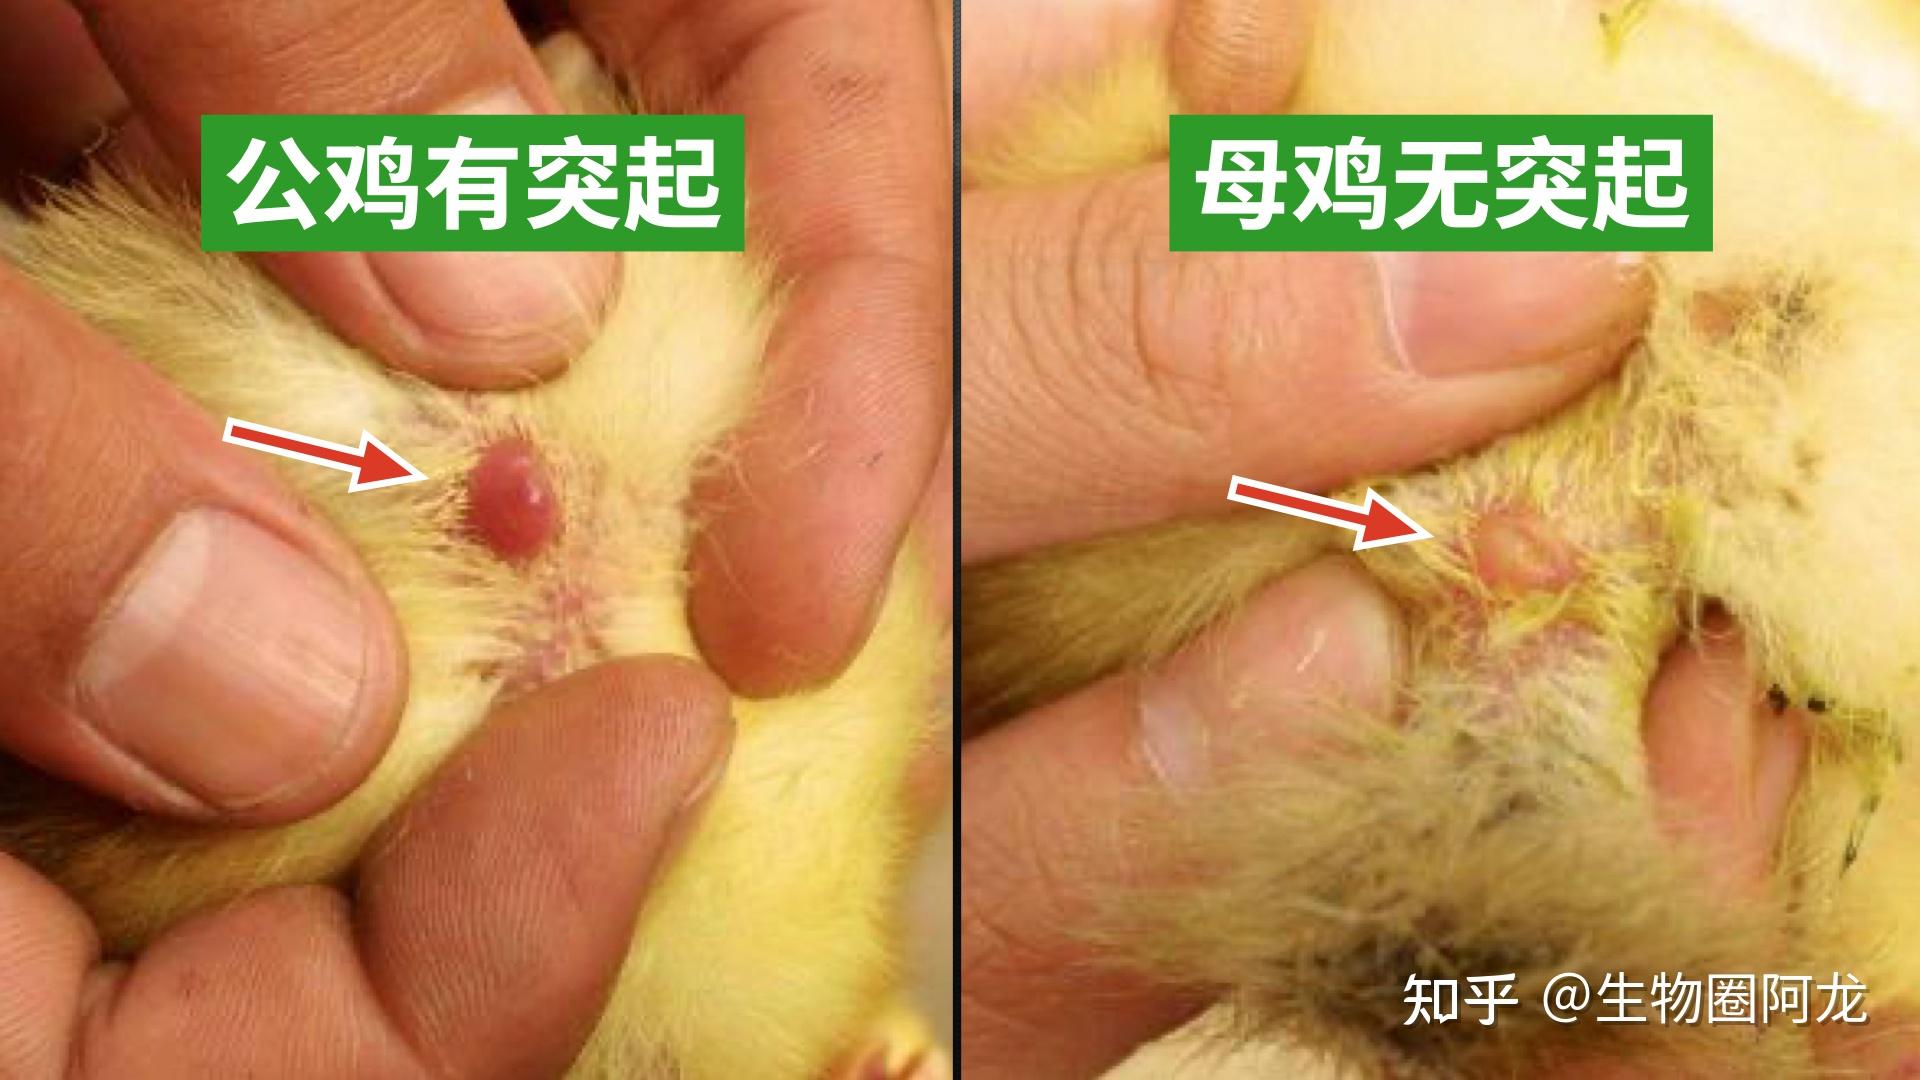 在台湾的一个养鸡场,一个中年男人把一堆小鸡摆放在面前,然后左手一只